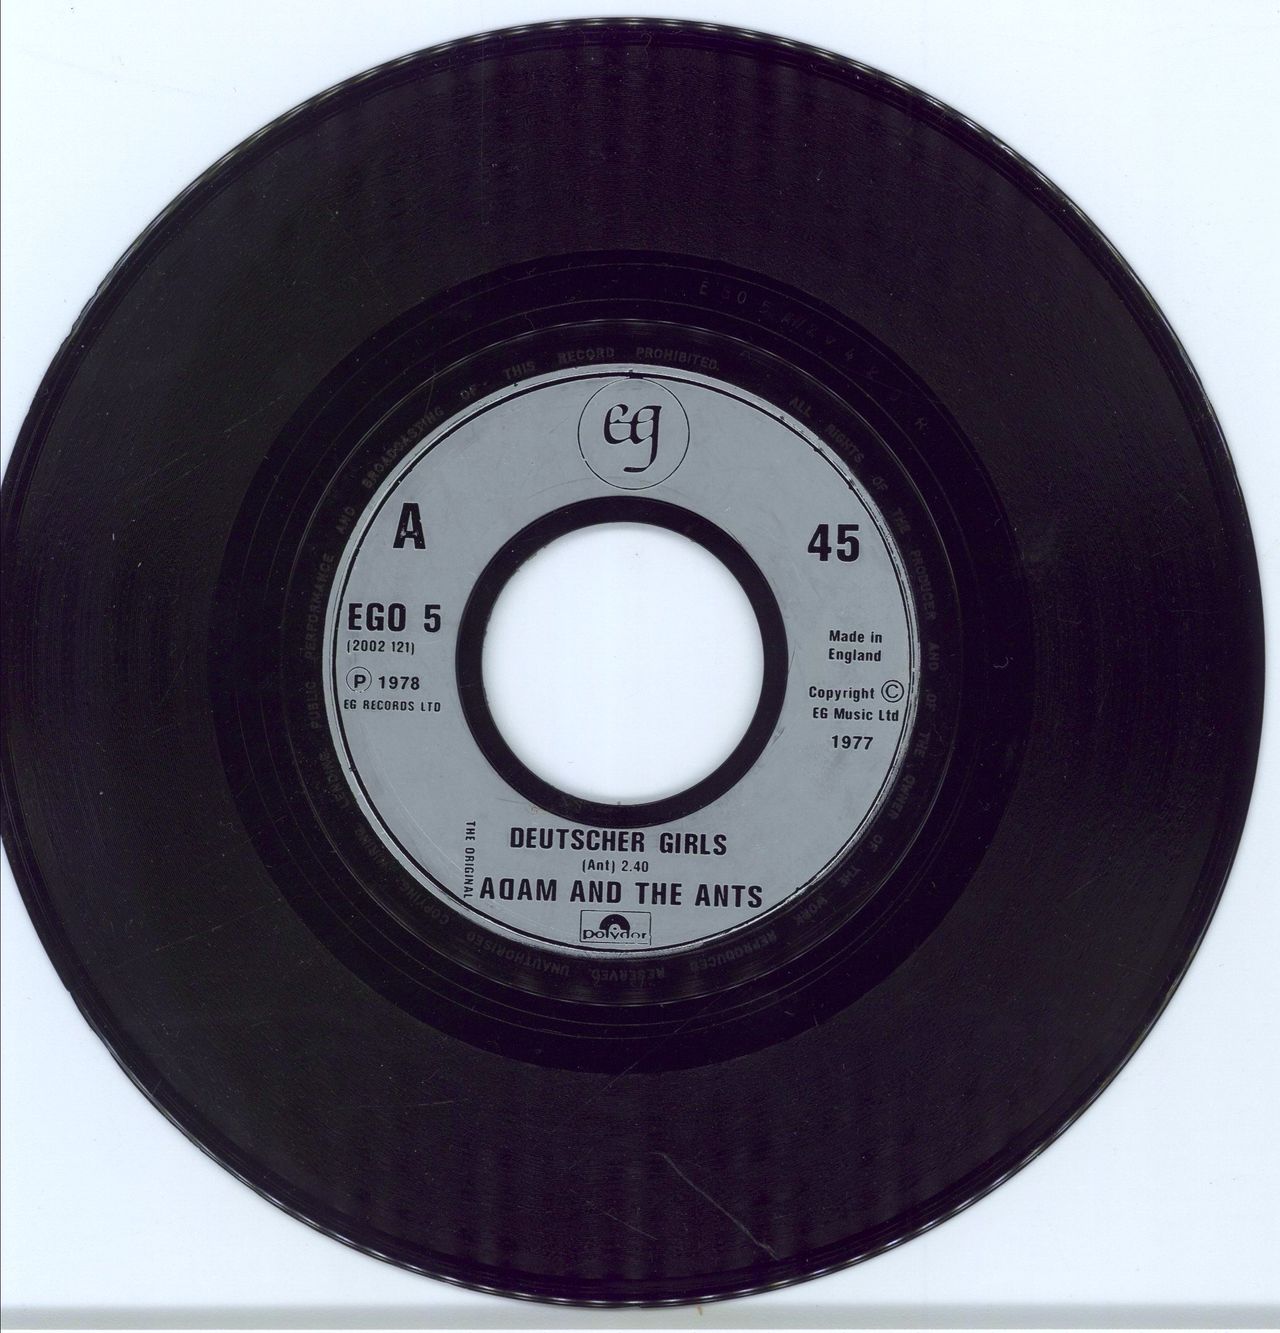 Adam & The Ants Deutscher Girls - Jukebox UK 7" vinyl single (7 inch record / 45) EGO5